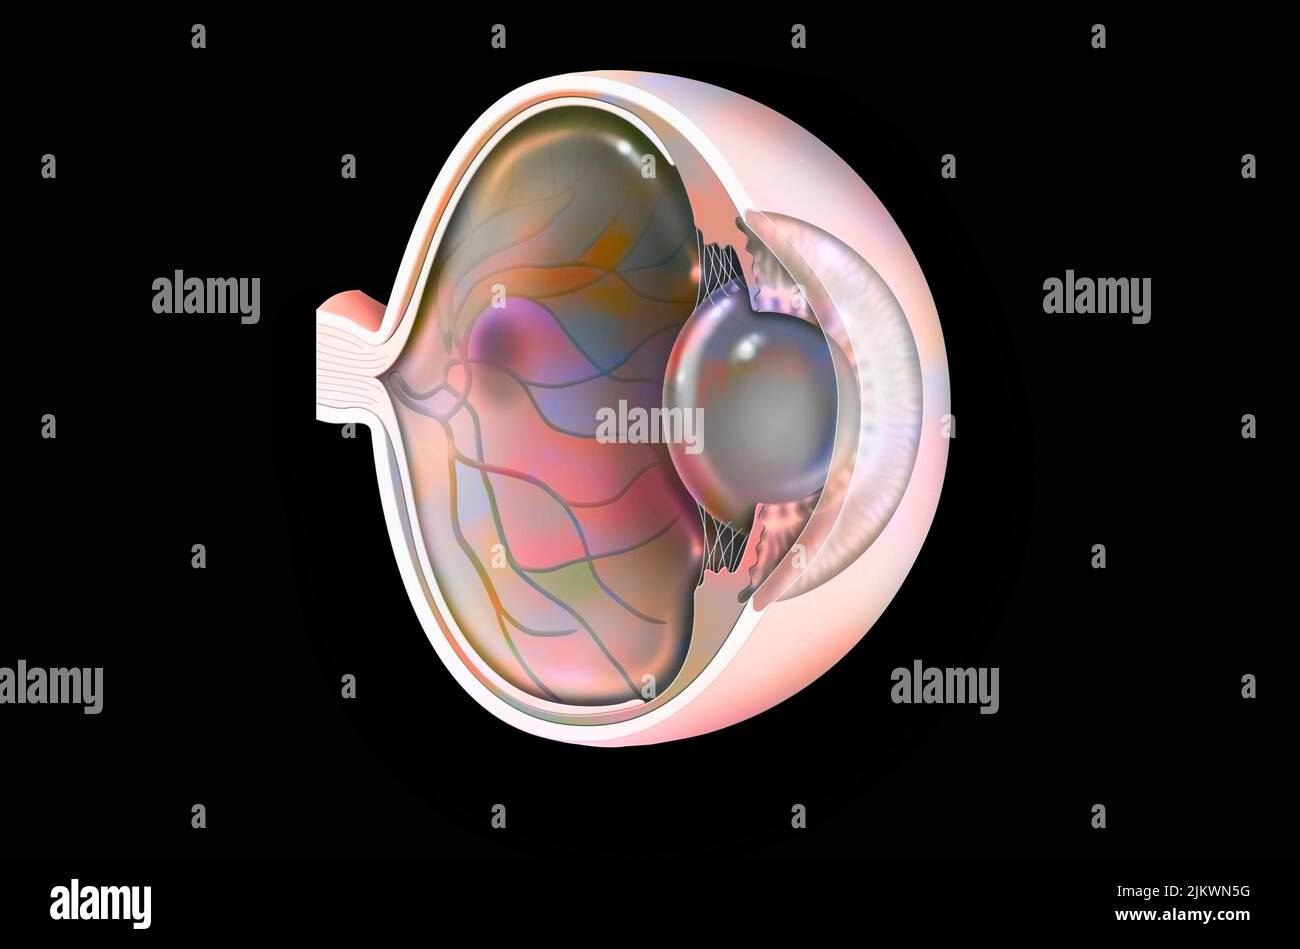 Occhio: Degenerazione maculare correlata all'età (malattia degenerativa della macula). Foto Stock